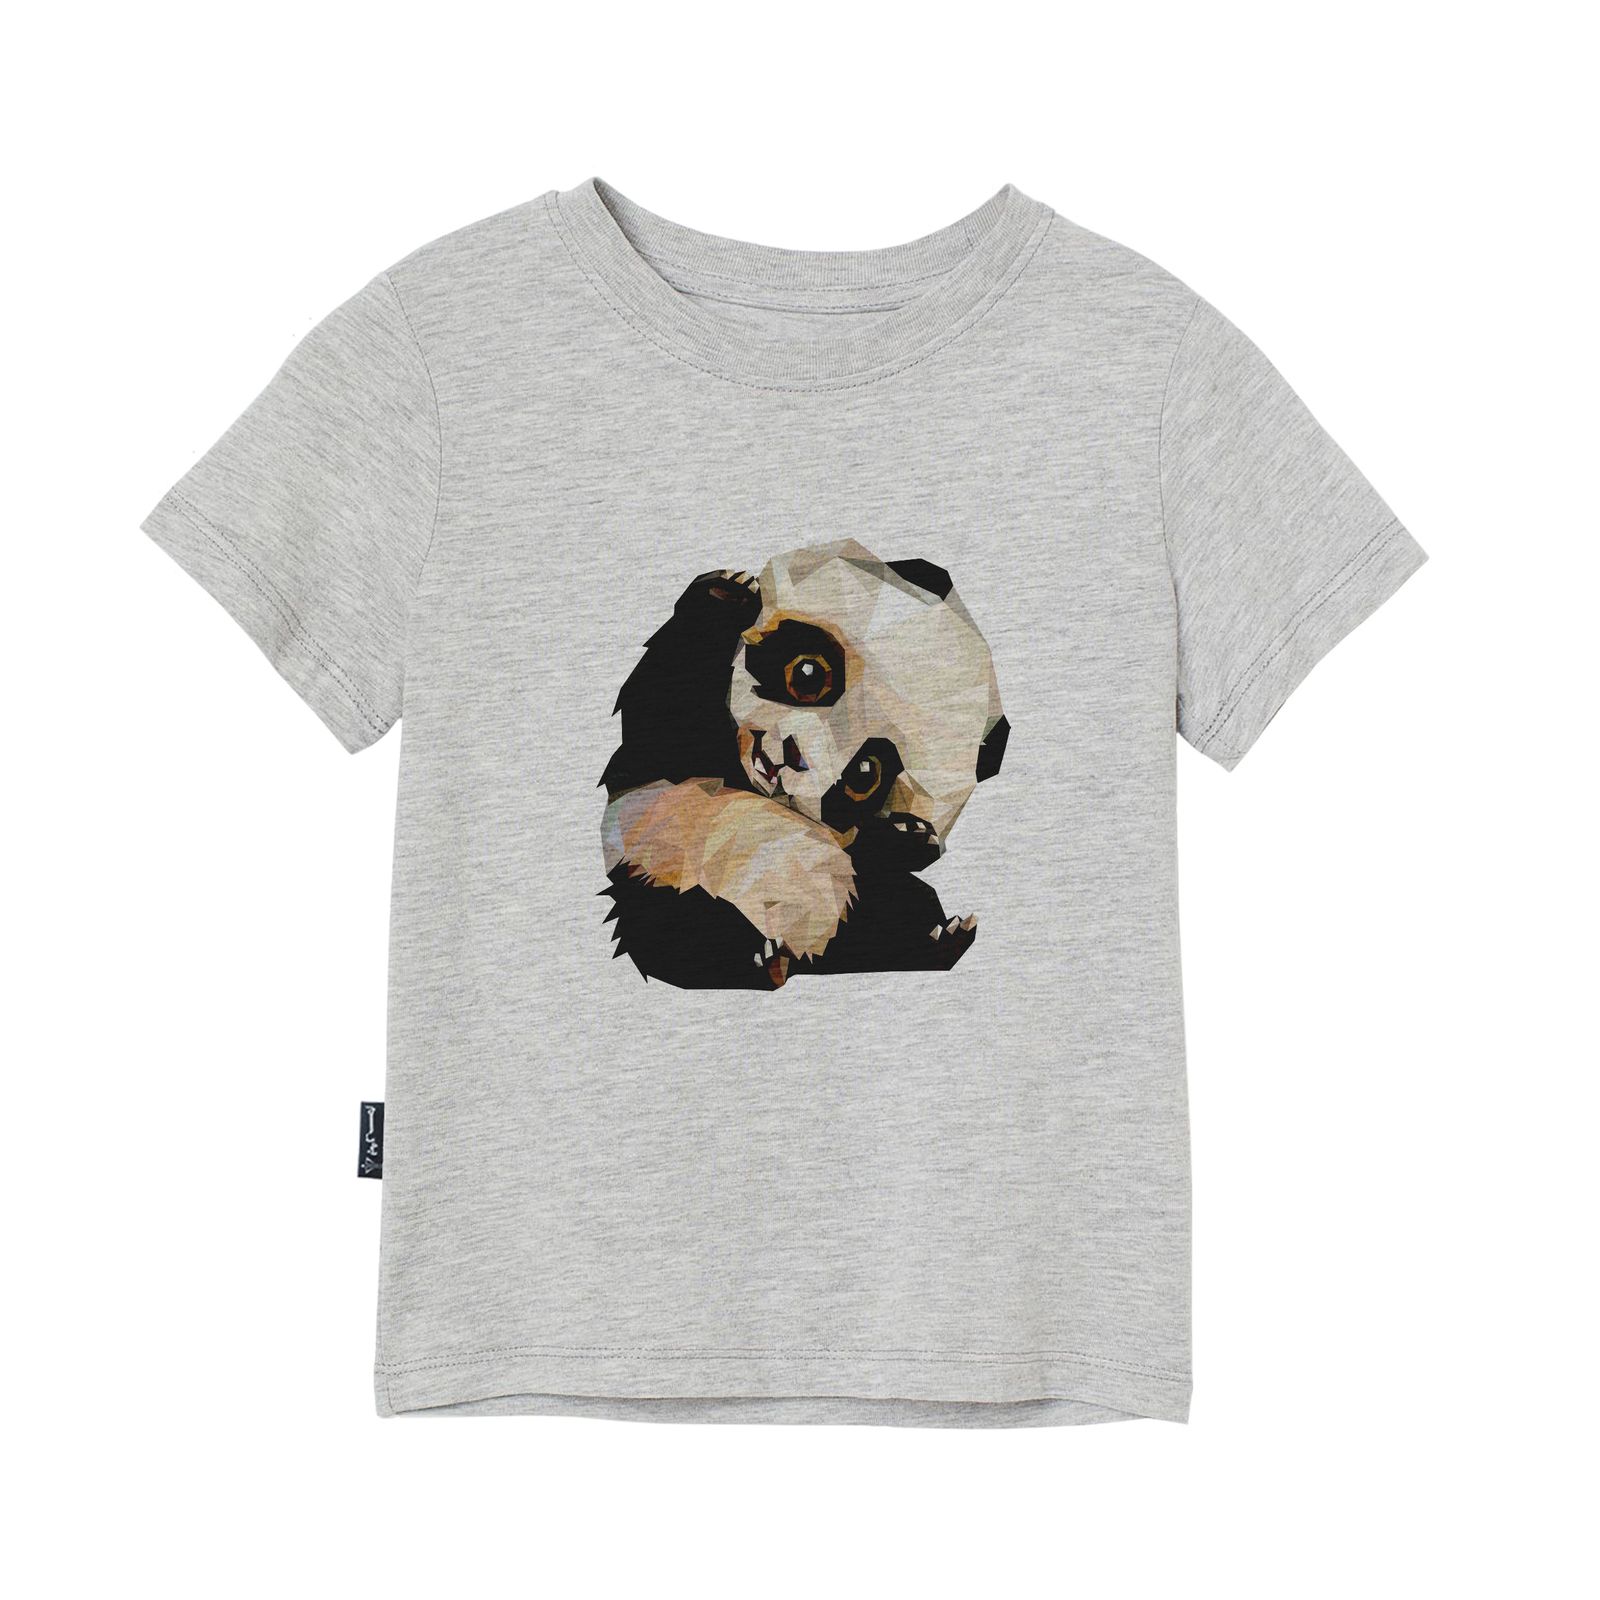 تی شرت آستین کوتاه دخترانه به رسم مدل پاندا کد 110024 -  - 3